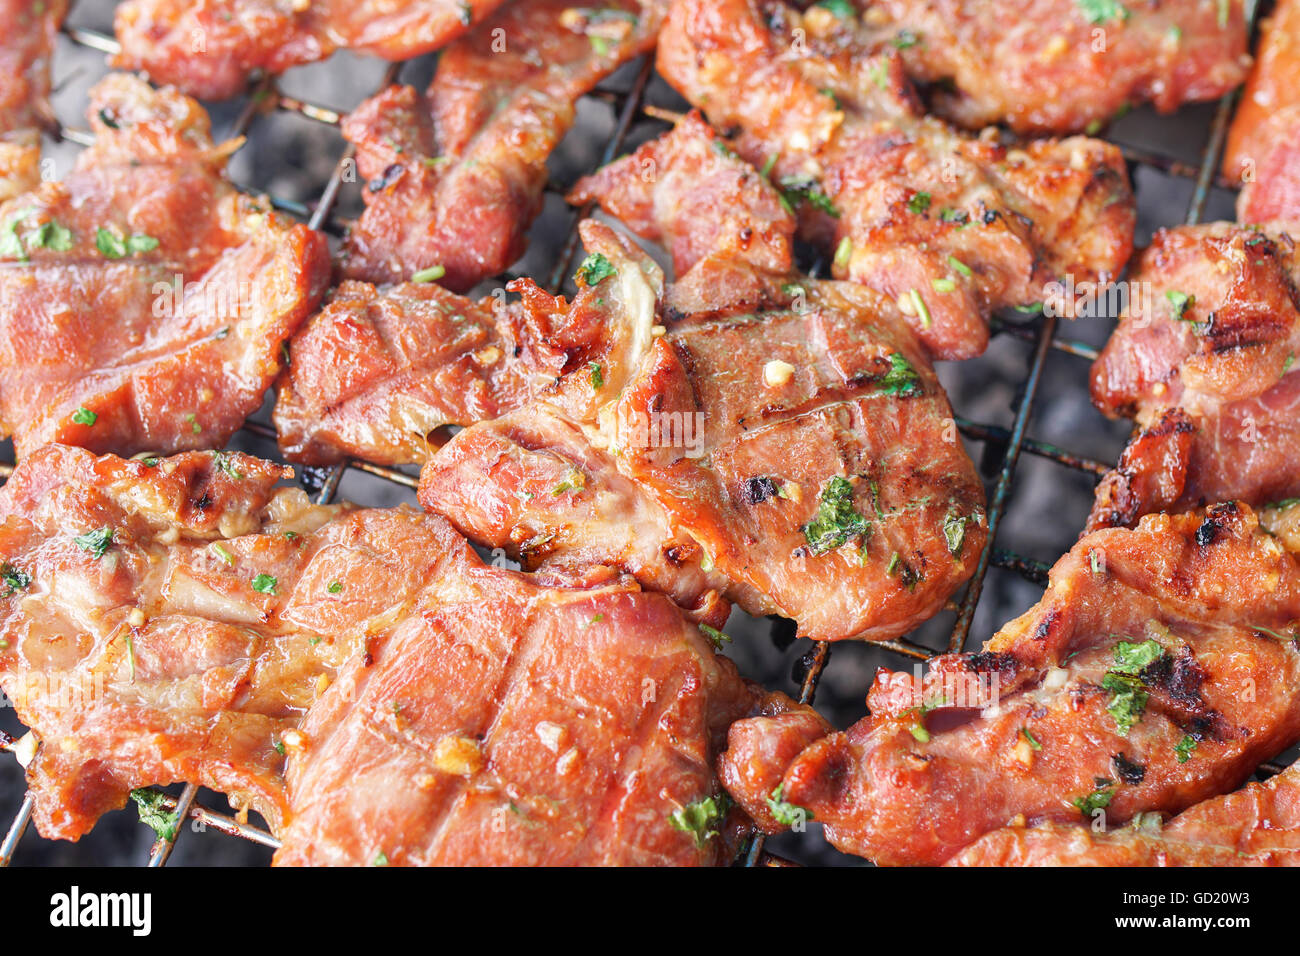 La viande grillée sur la cuisinière Banque D'Images